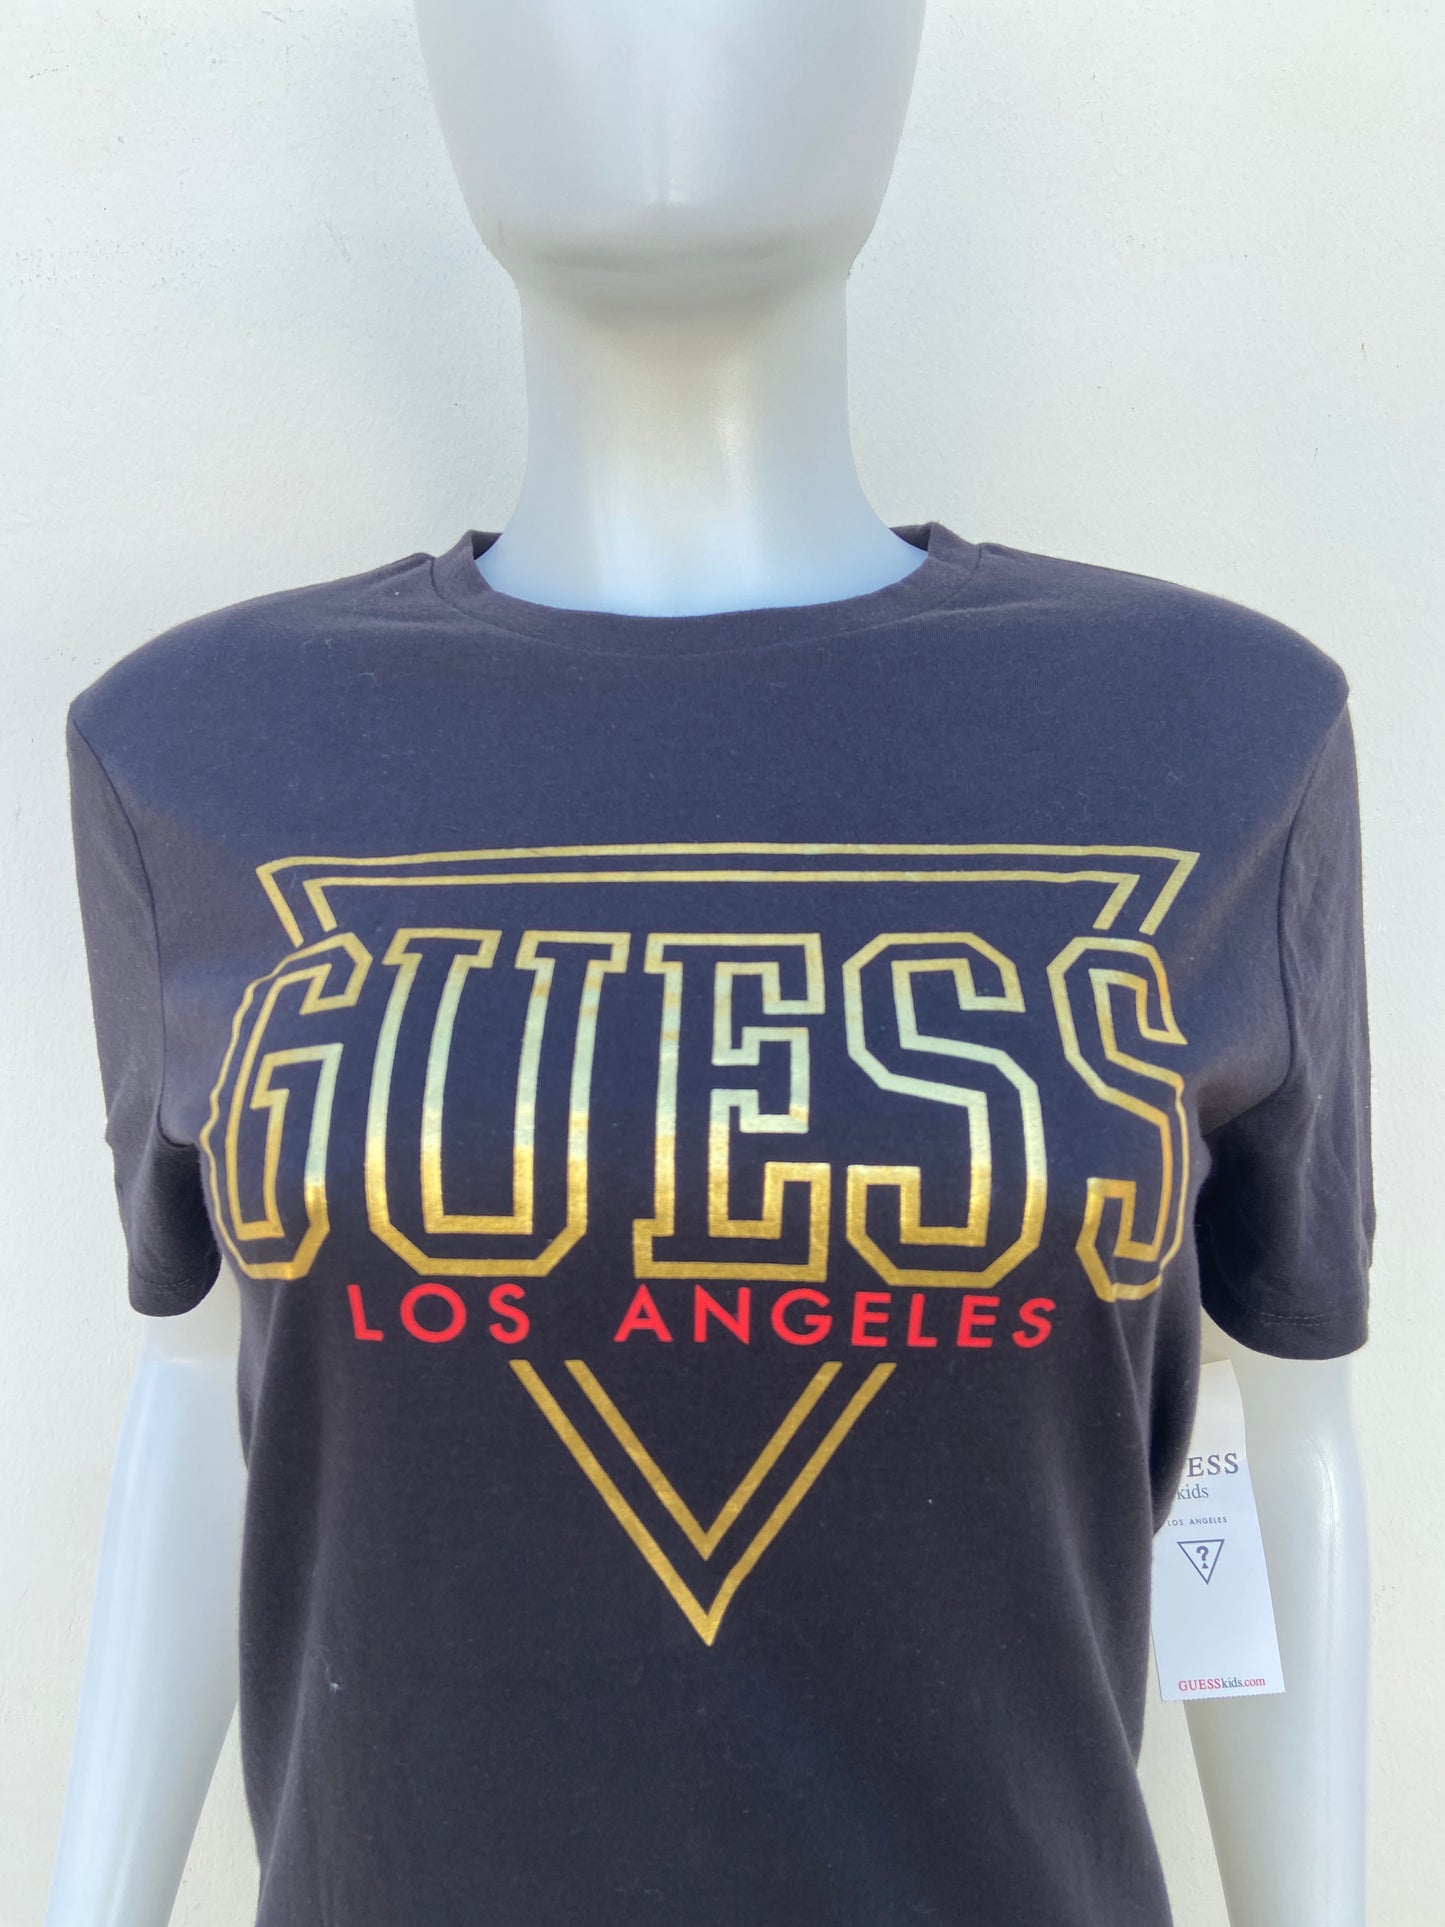 T-shirt Guess original negro con letras Guess Los Angeles en dorado y rojo.